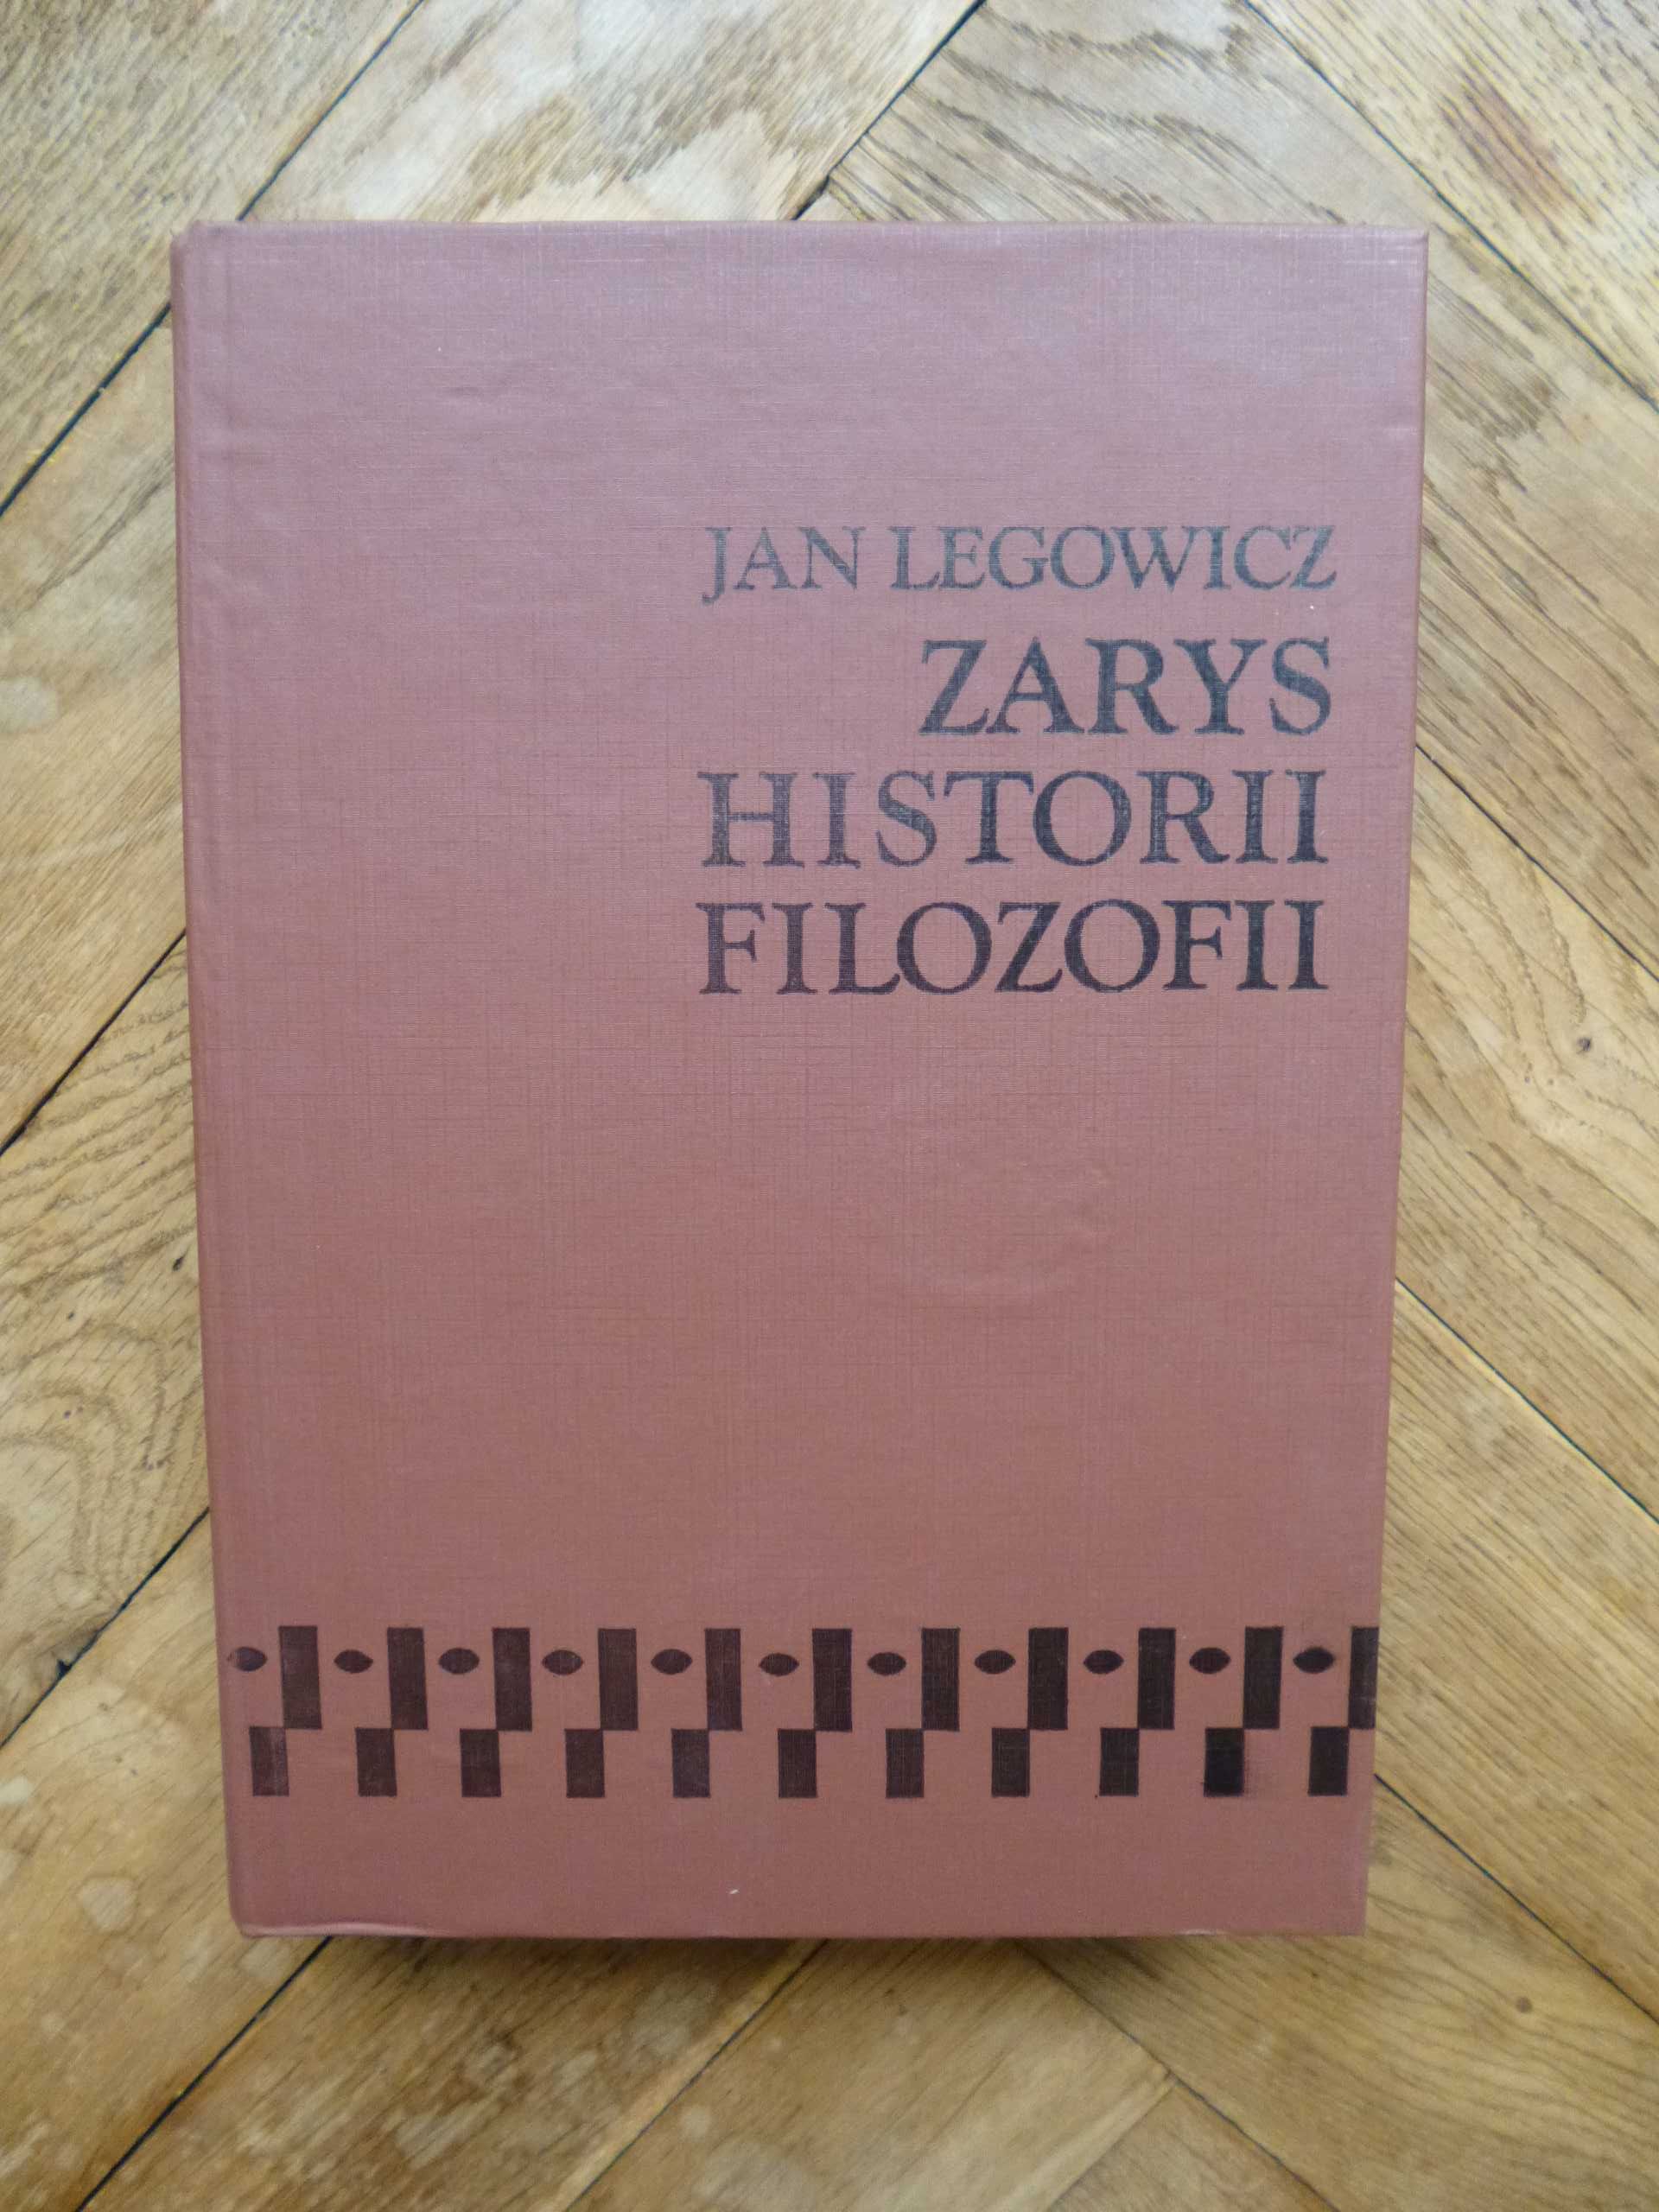 Jan Legowicz "Zarys historii filozofii"